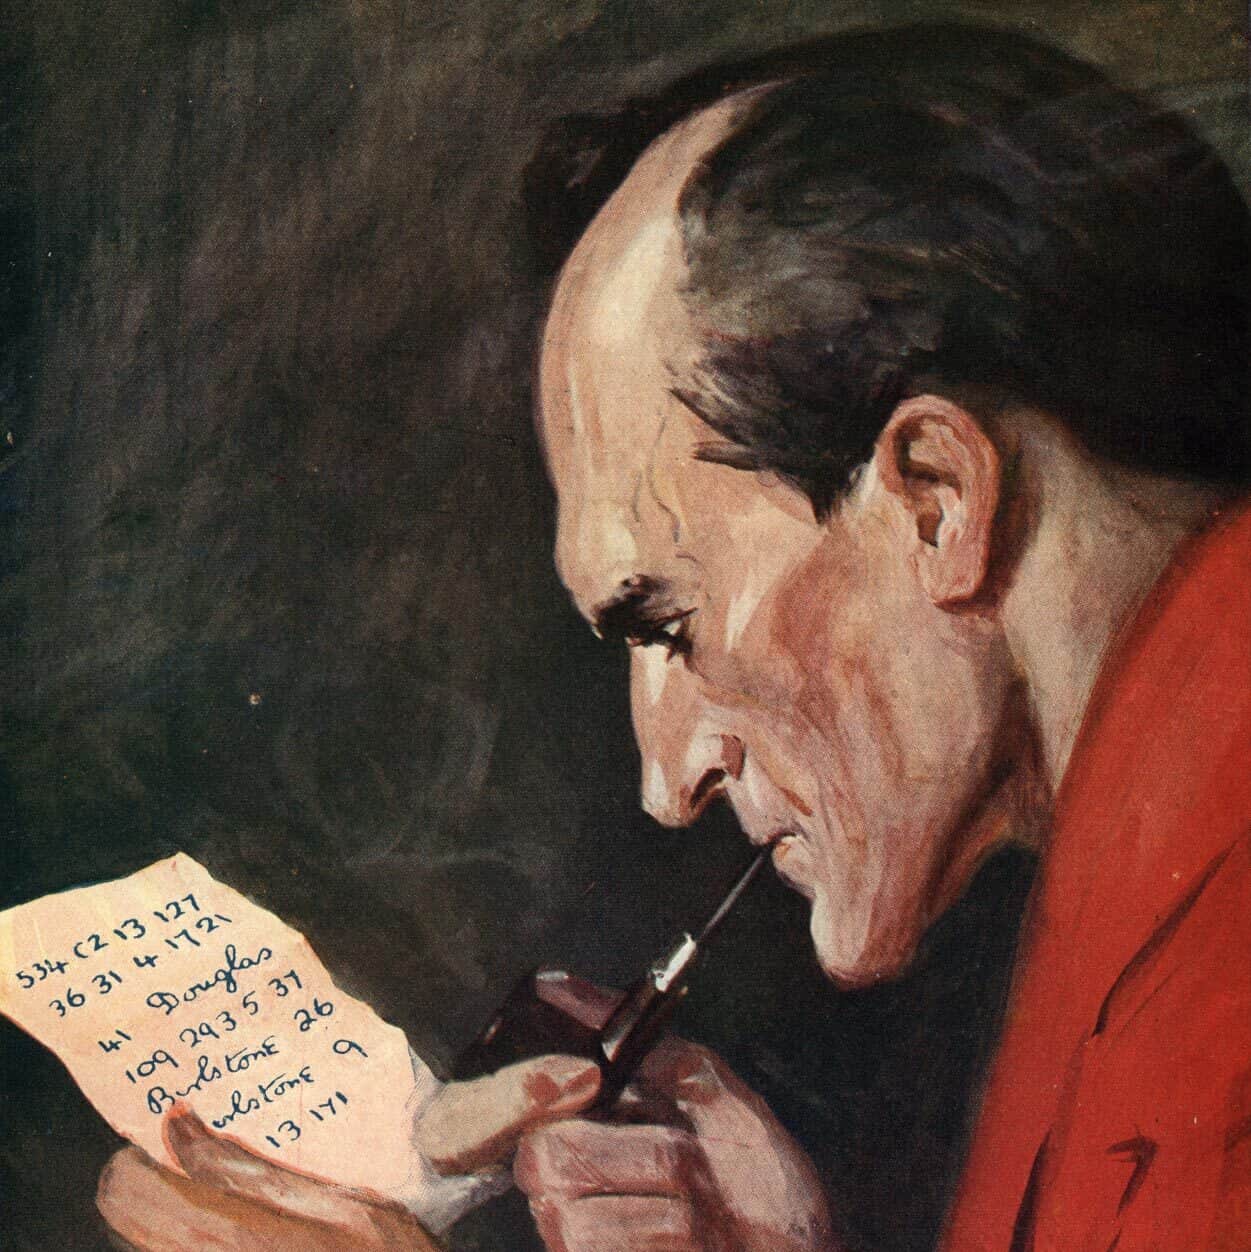 Sherlock Holmes décrypte le message chiffré transmis par « Porlock », un de ses agents infiltrés auprès du professeur Moriarty. Illustration de La Vallée de la peur d'Arthur Conan Doyle.